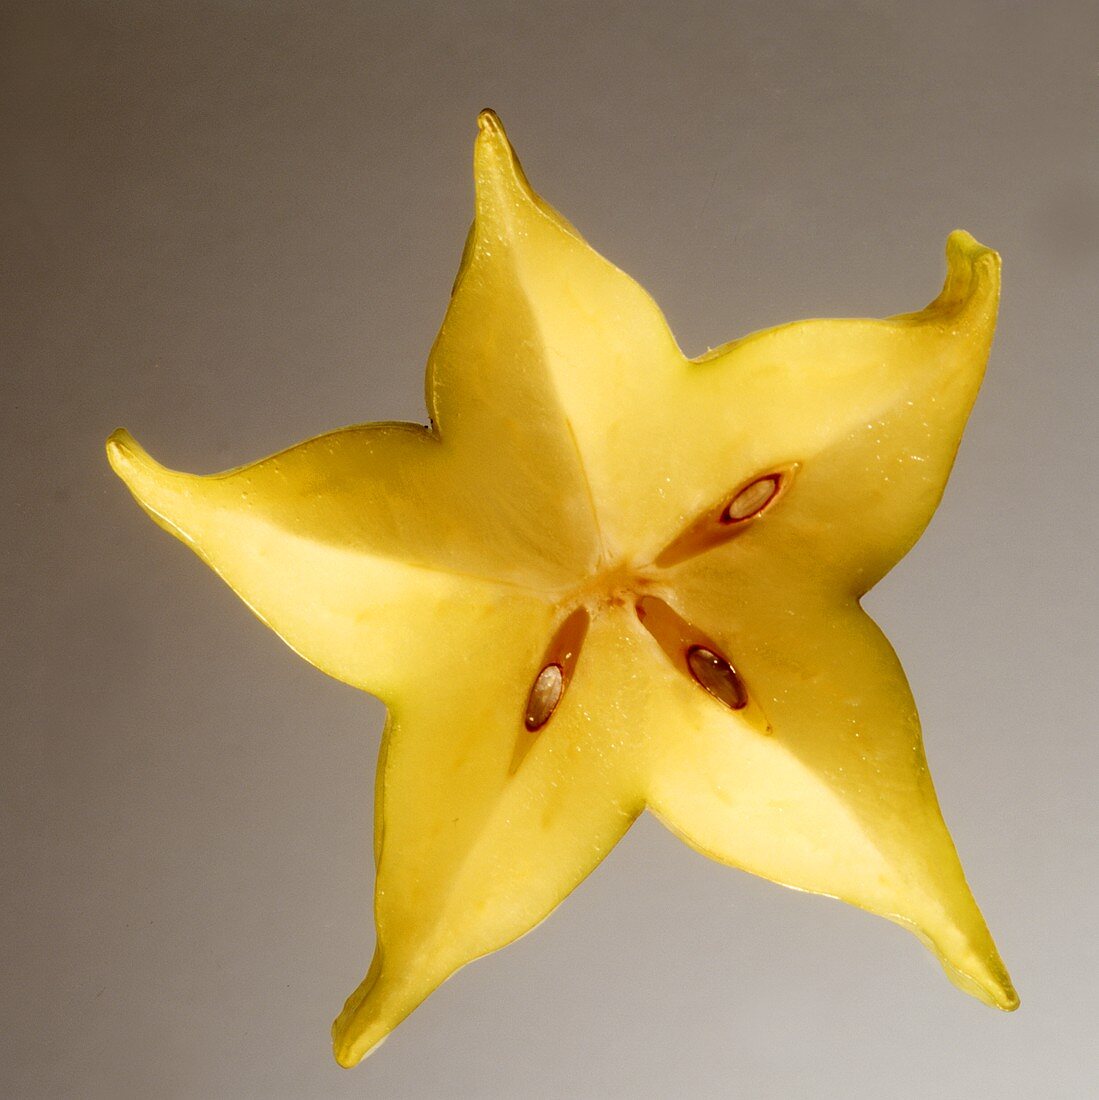 Star Fruit Cross Section